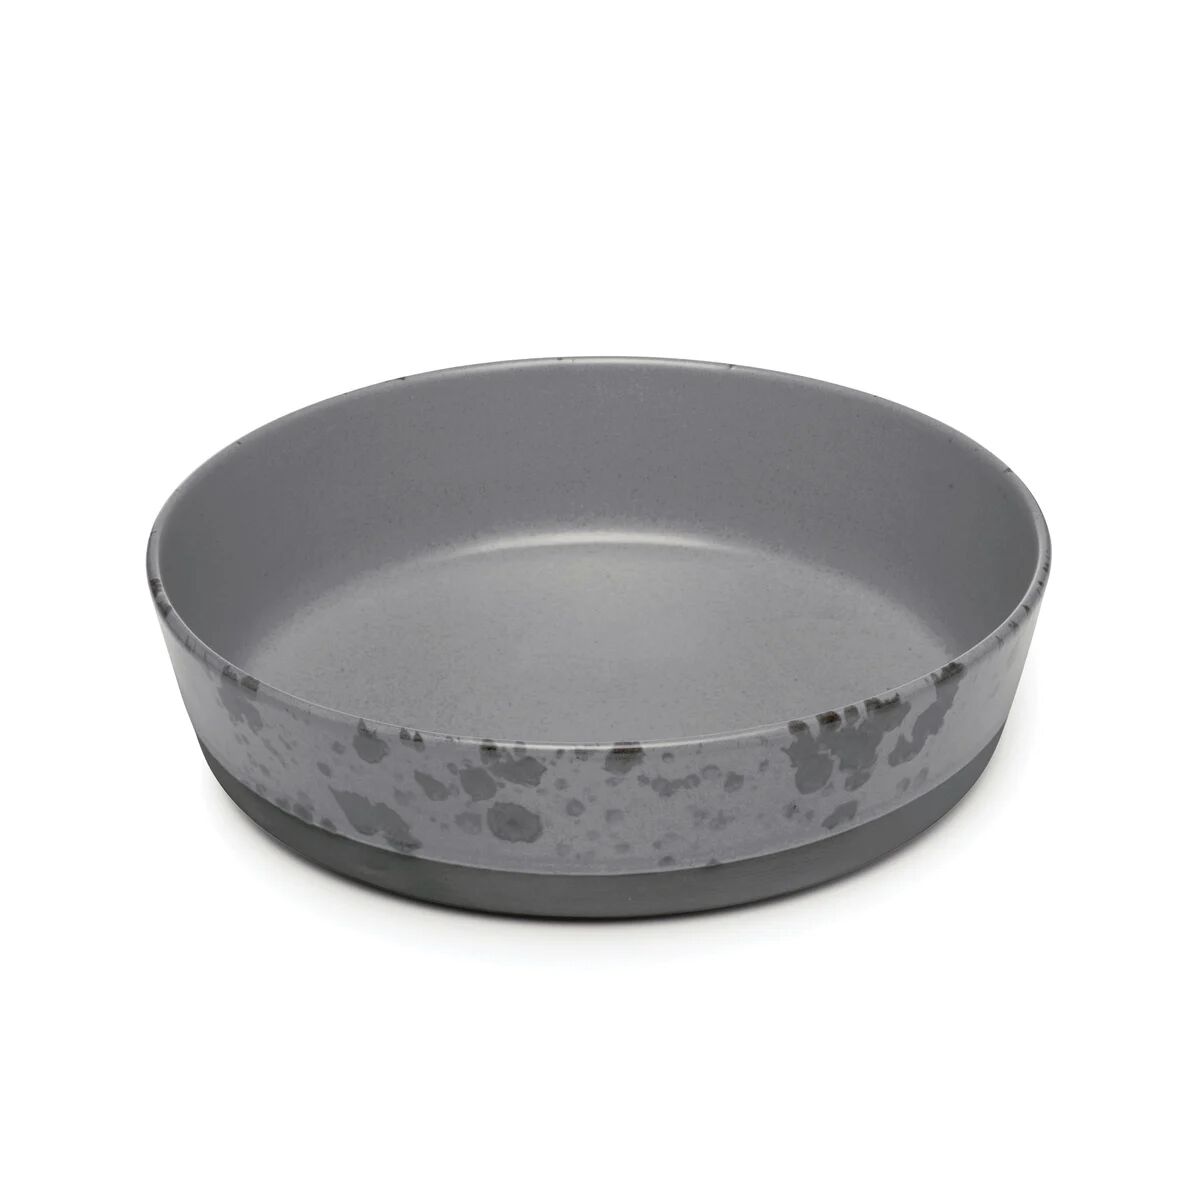 Aida Raw suppetallerken Ø 19,4 cm grå med prikker